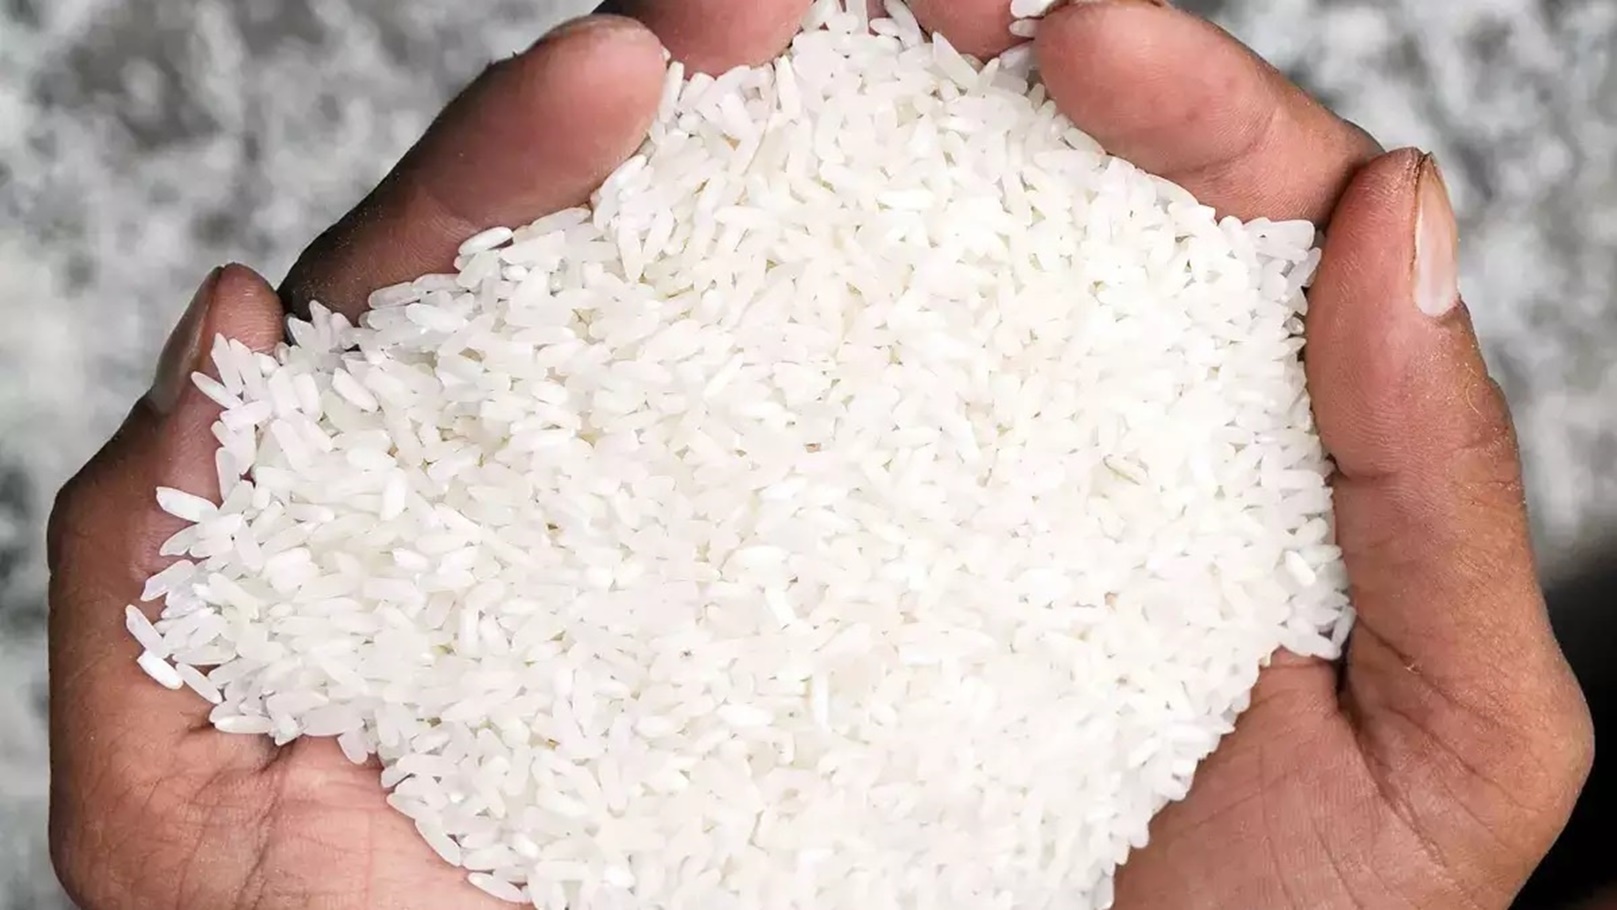 الأرز من أهم محاصيل الحبوب الرئيسية في مصر